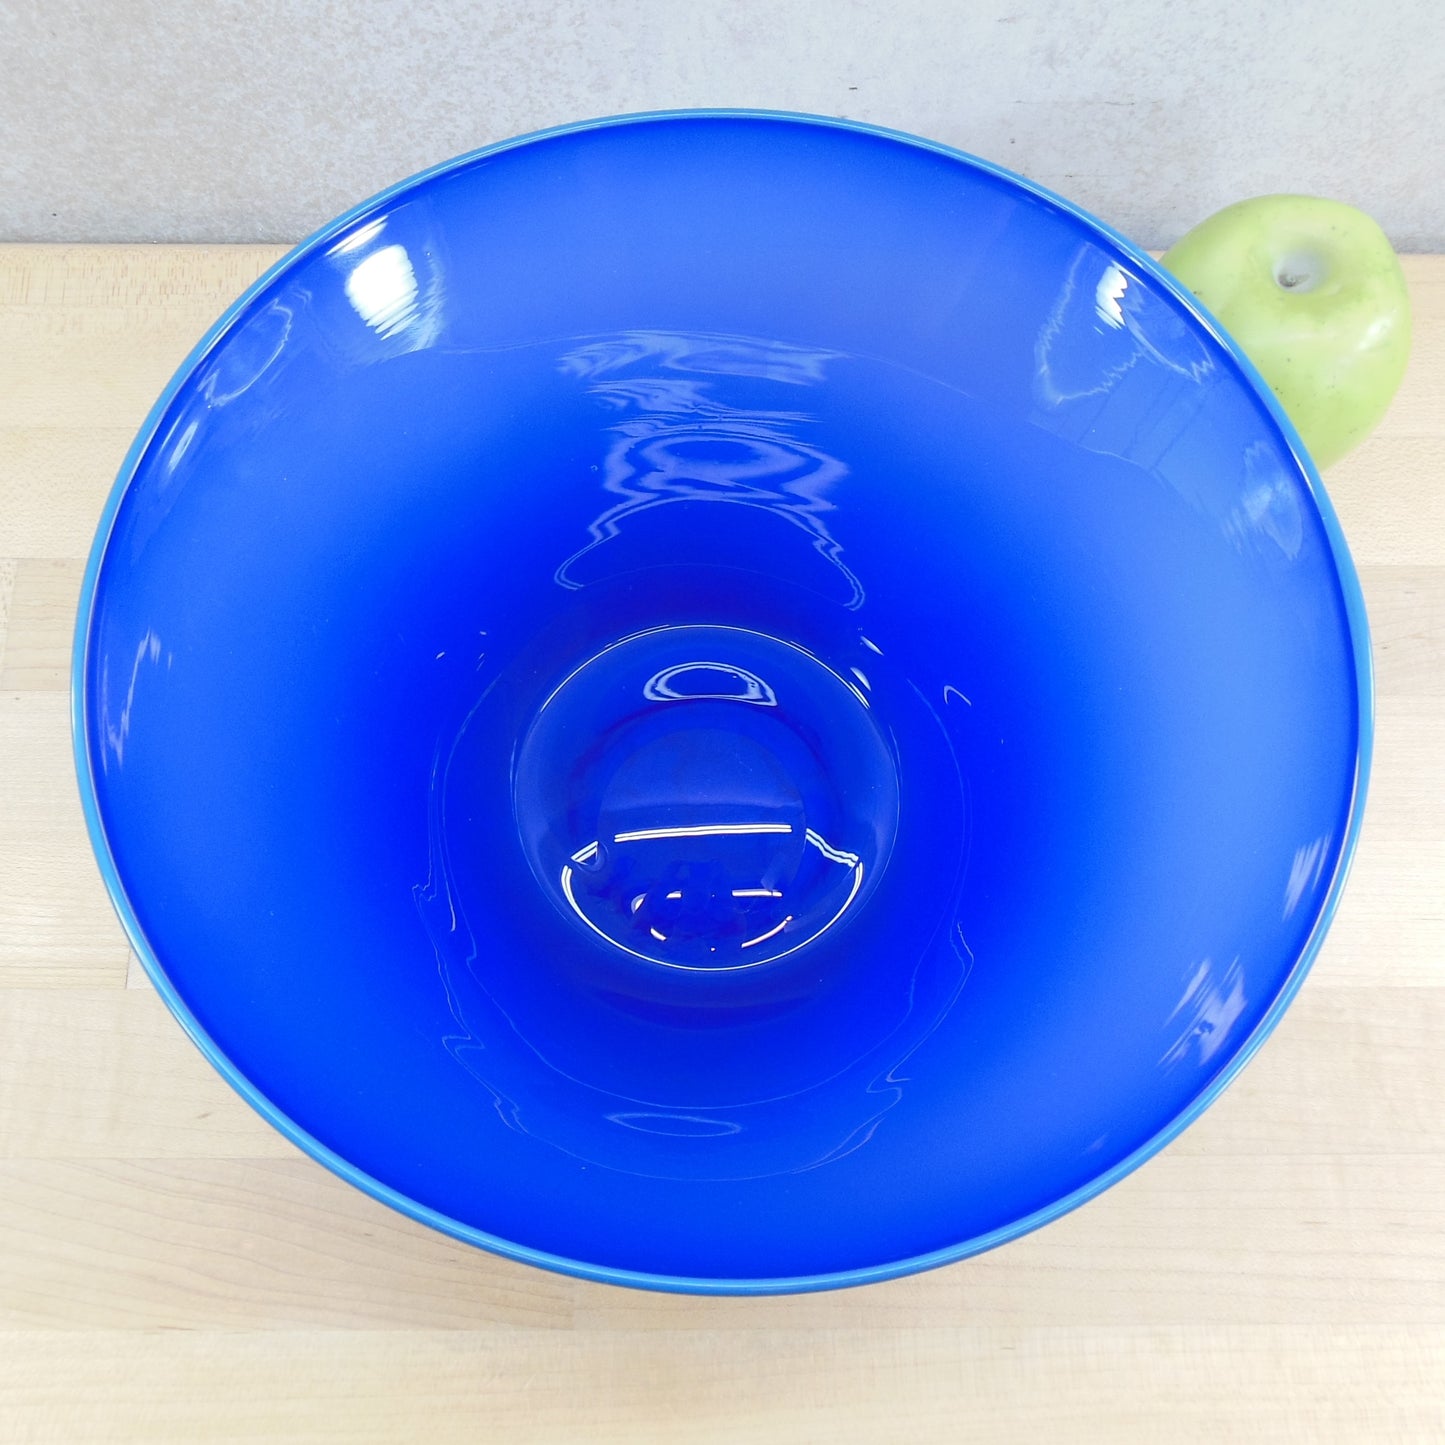 John Burchetta 1994 Signed Art Glass Bowl Cobalt Blue Tapered 10.5"